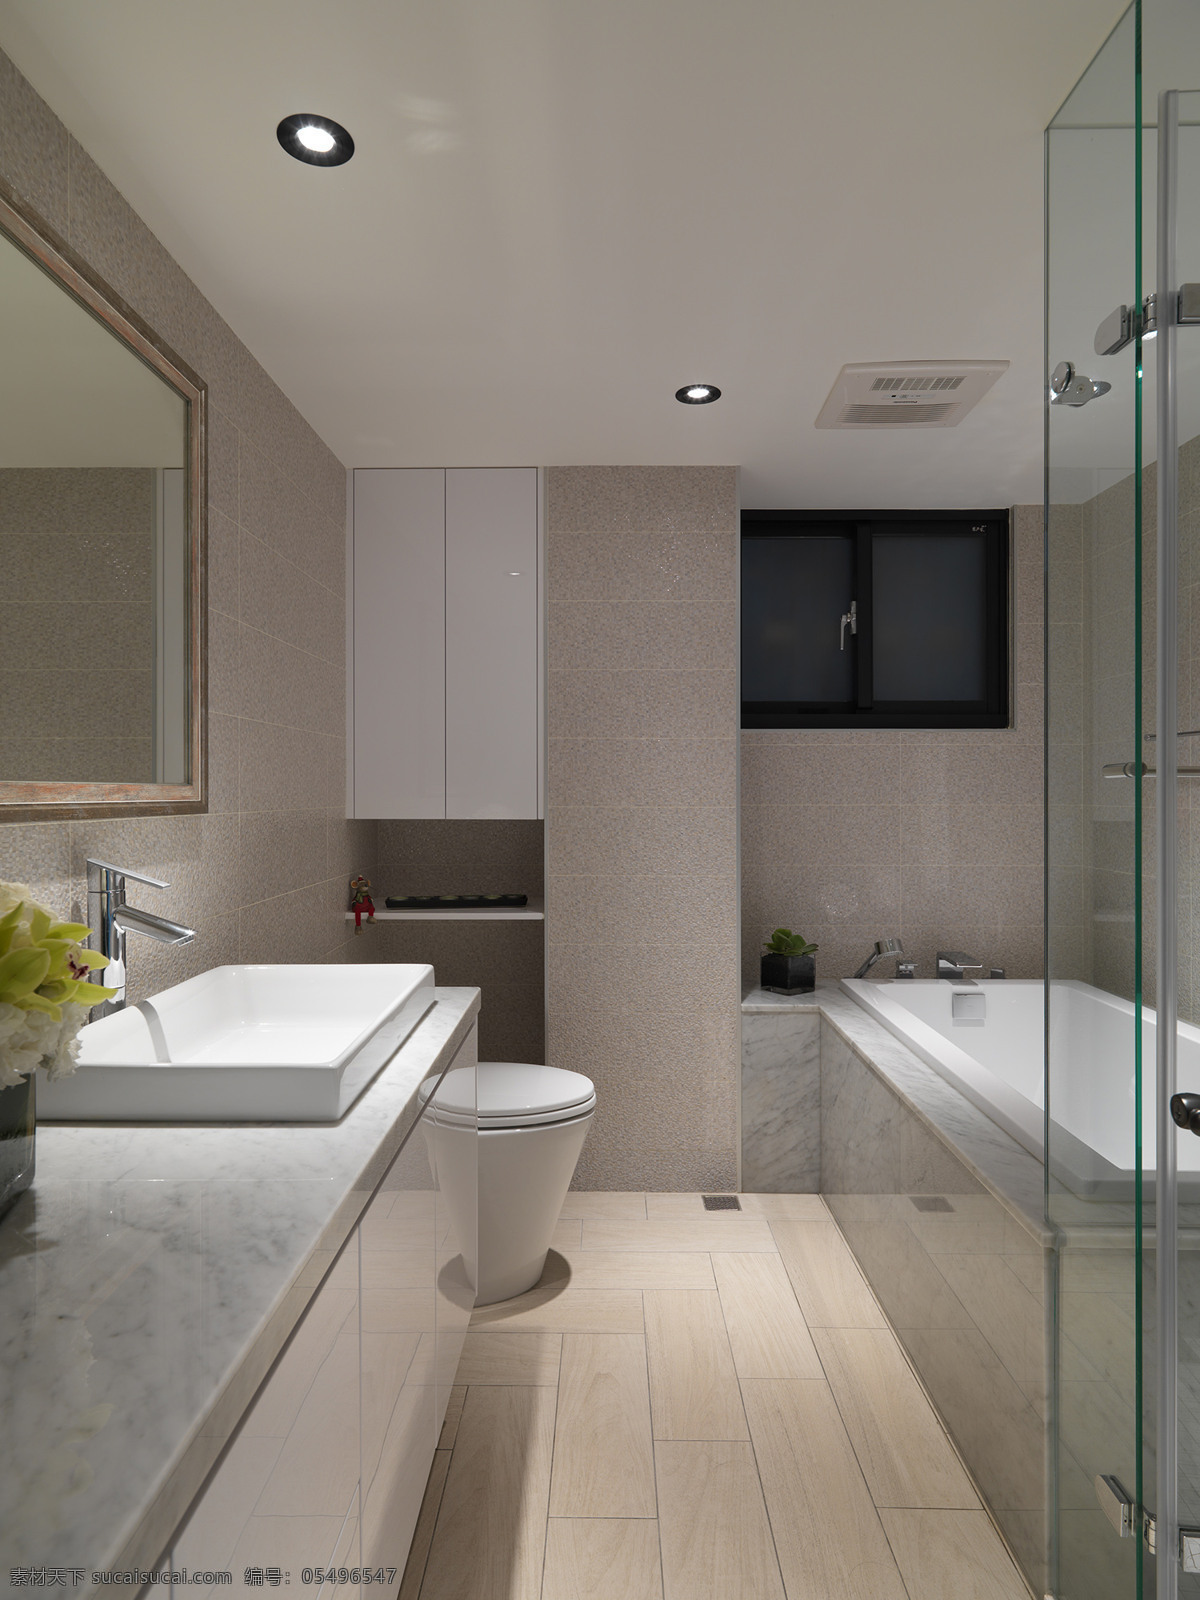 现代 简约 卫生间 白色 洗手台 室内装修 效果图 白色洗手台 壁灯 浅色地板 卫生间装修